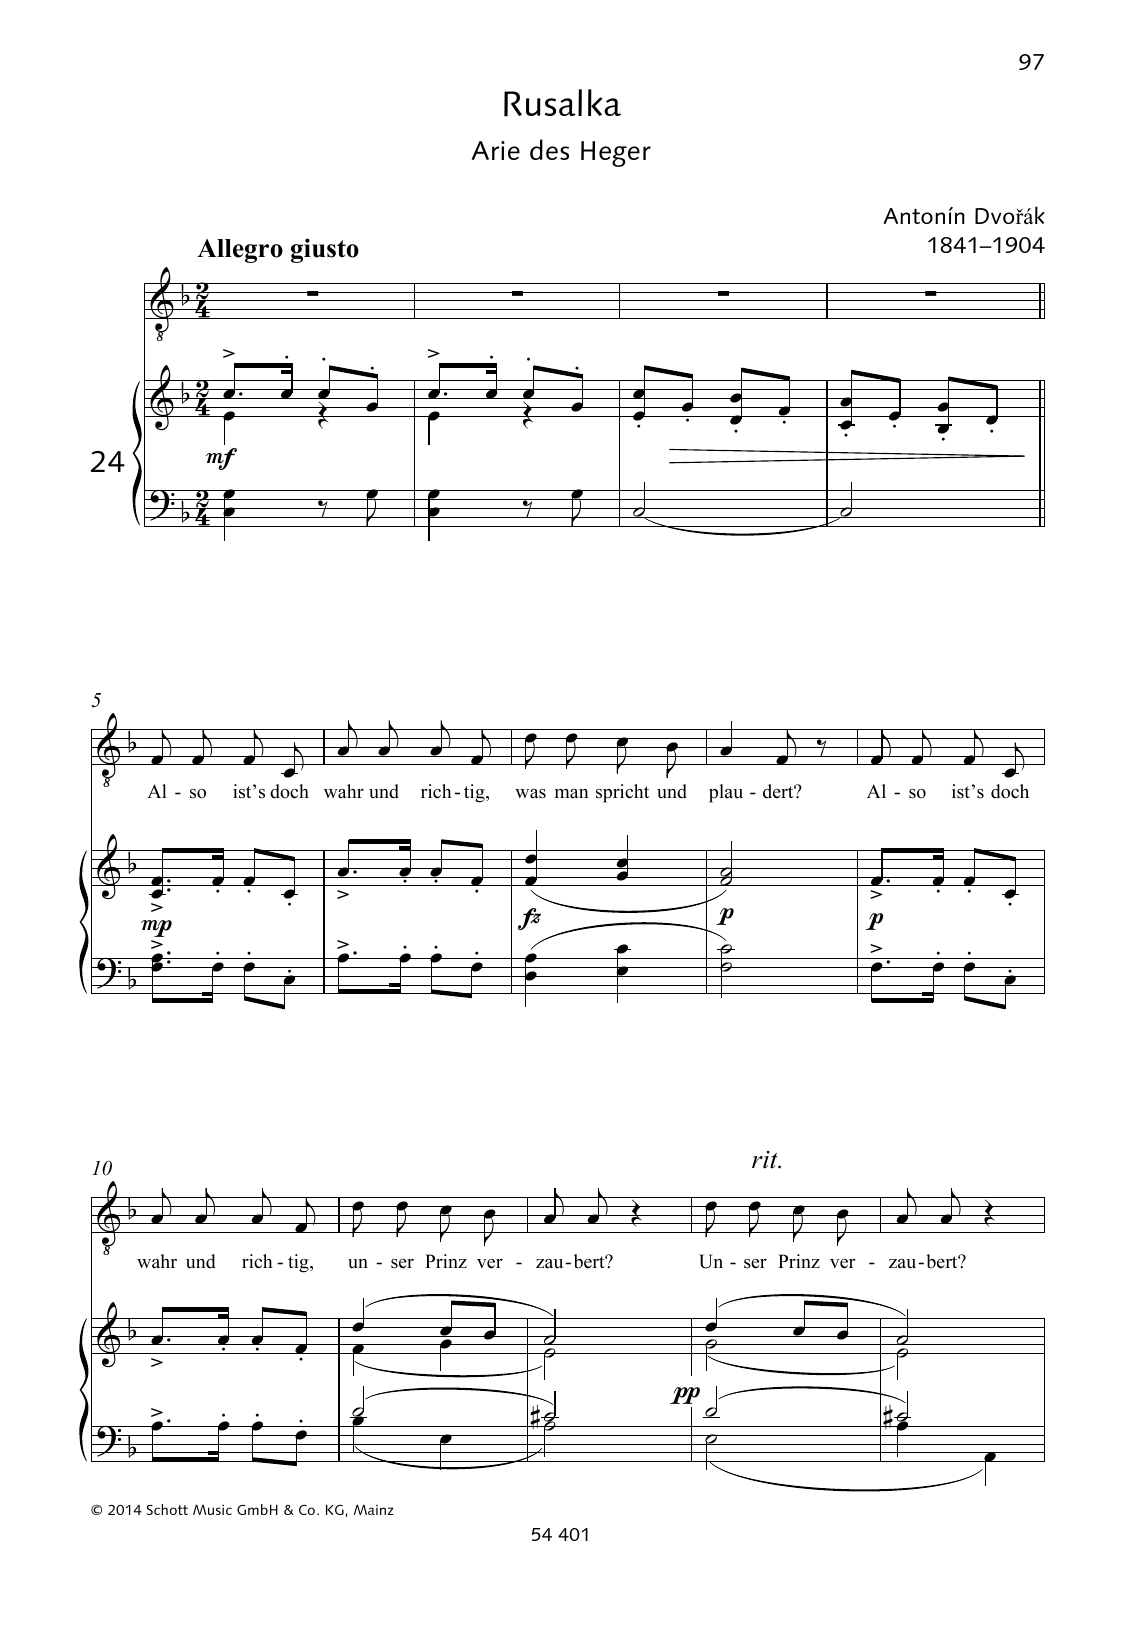 Antonín Dvorák Also ist's doch wahr und richtig Sheet Music Notes & Chords for Piano & Vocal - Download or Print PDF